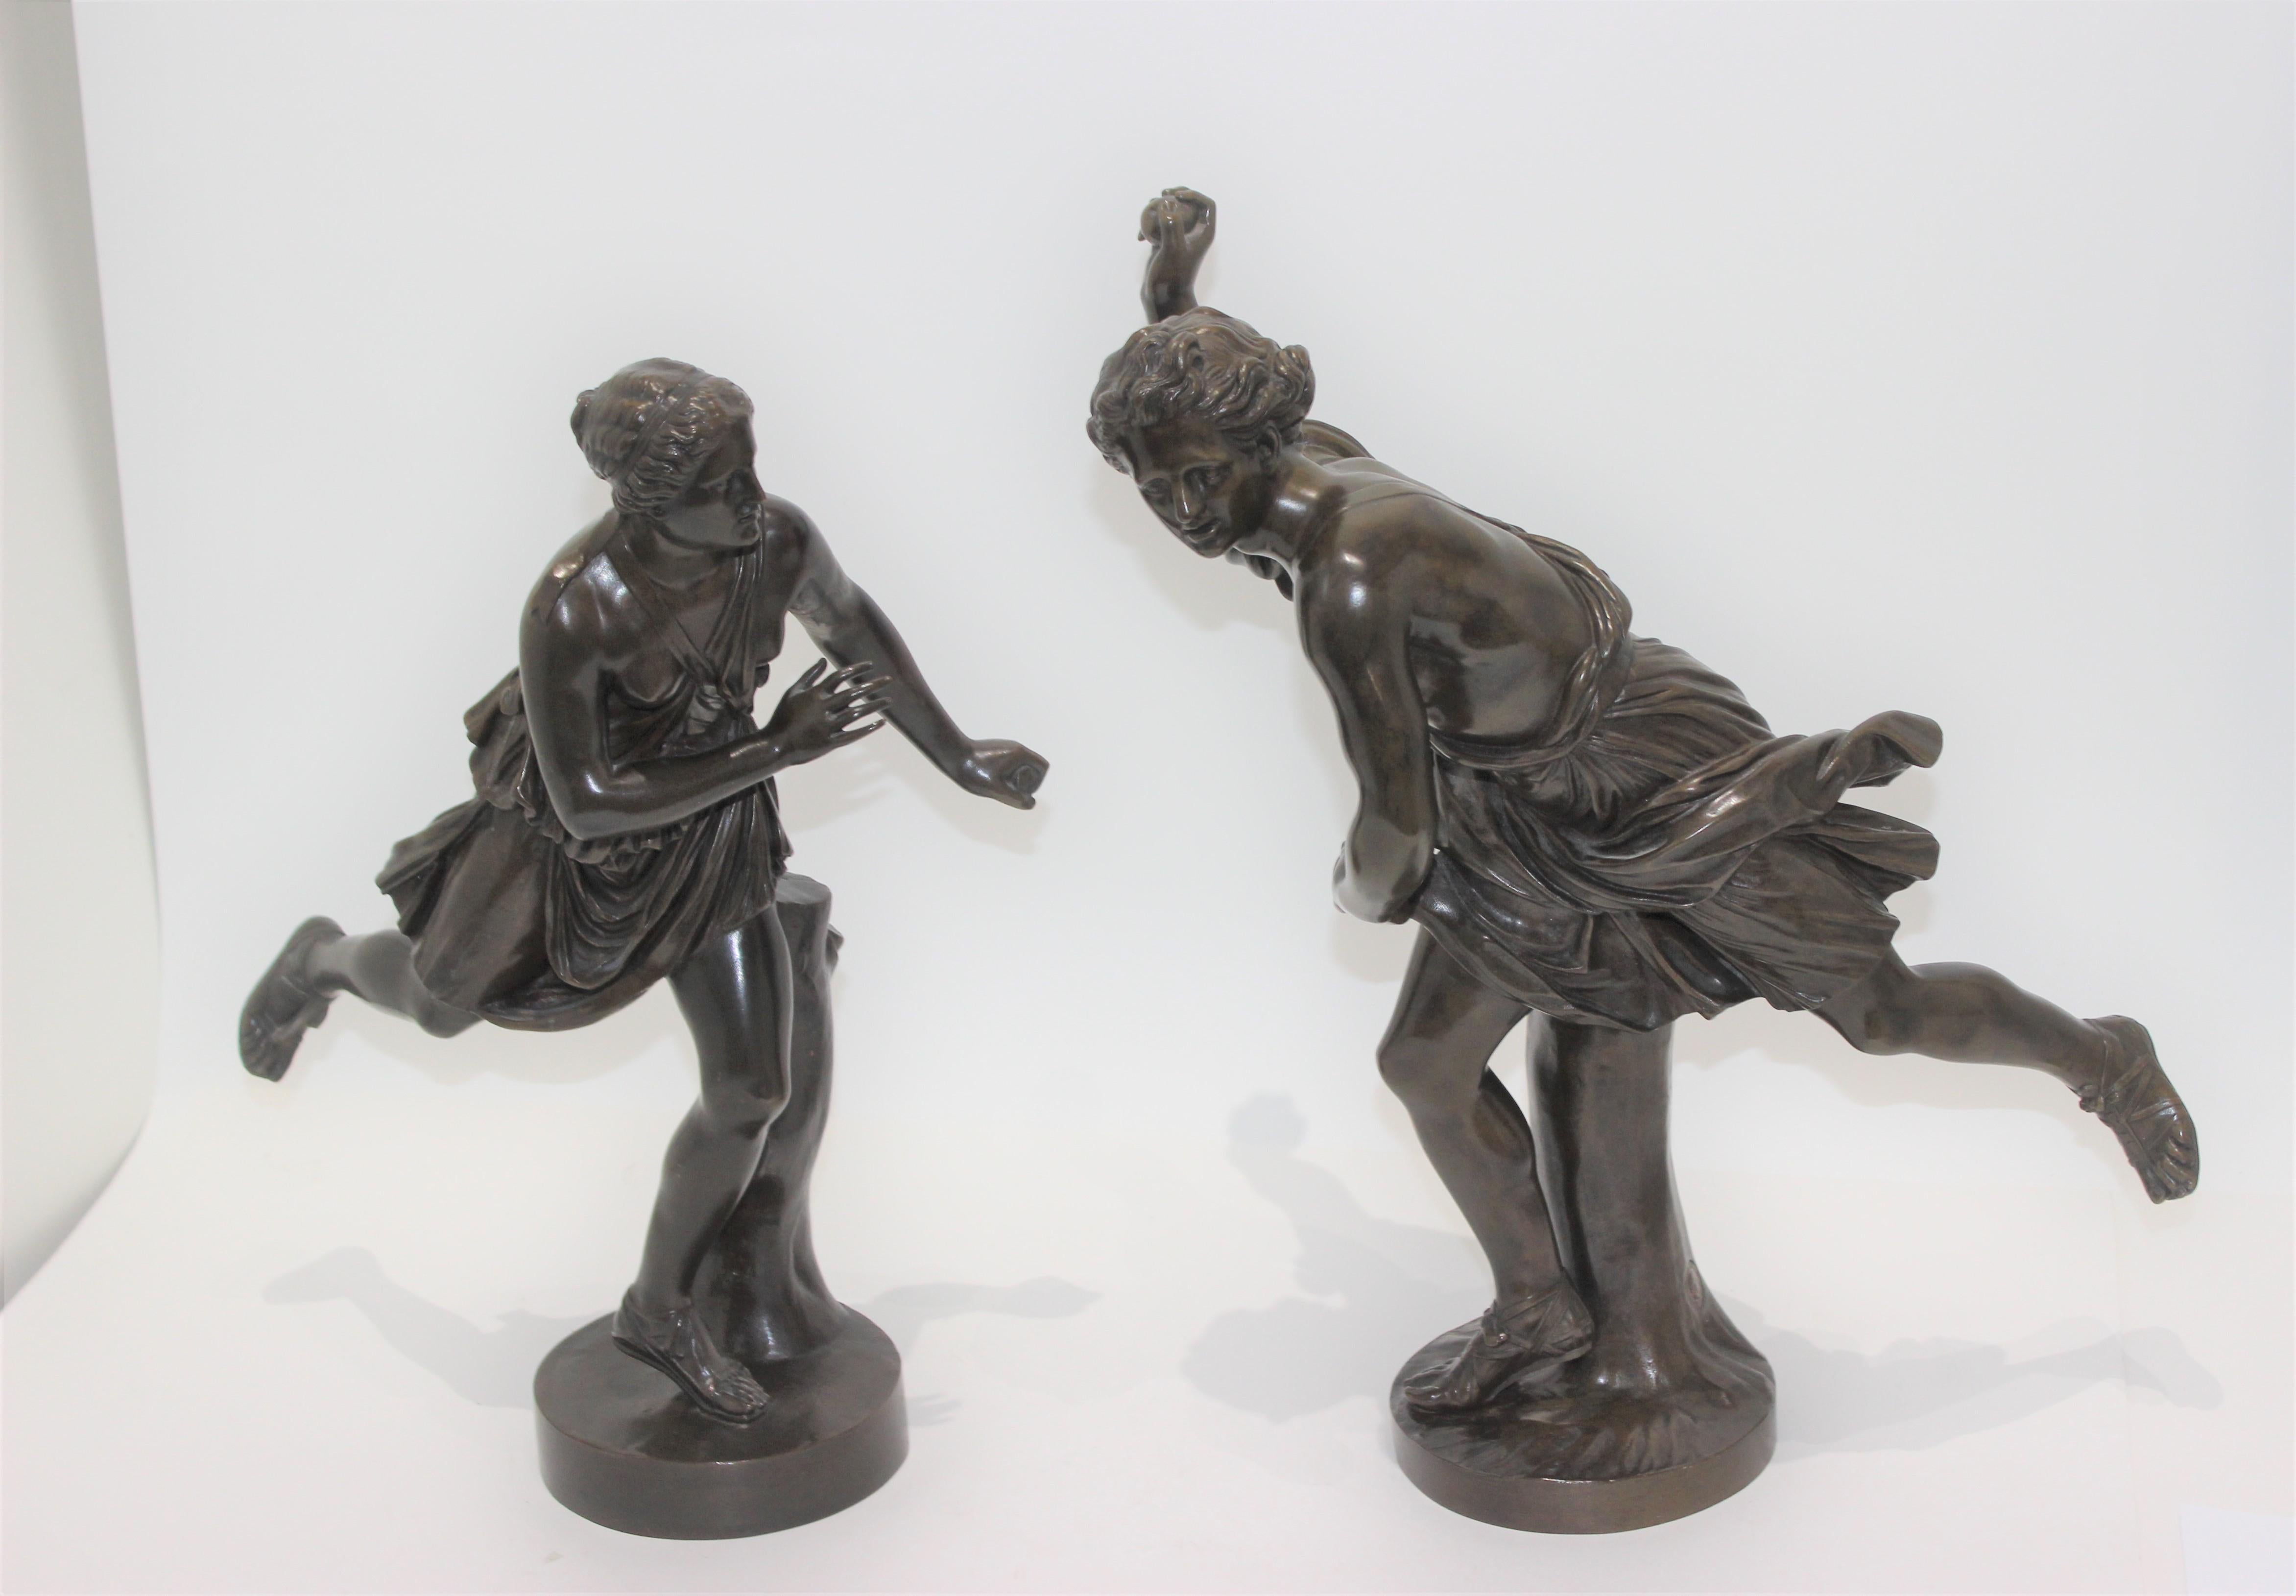 Cet ensemble de deux bronzes de F. Barbedienne de la fin du XIXe siècle a été acquis auprès d'une succession de Palm Beach.

POUR INFORMATION
Atalante, la déesse grecque de la course à pied, est l'un des dieux les moins connus qui méritent d'être